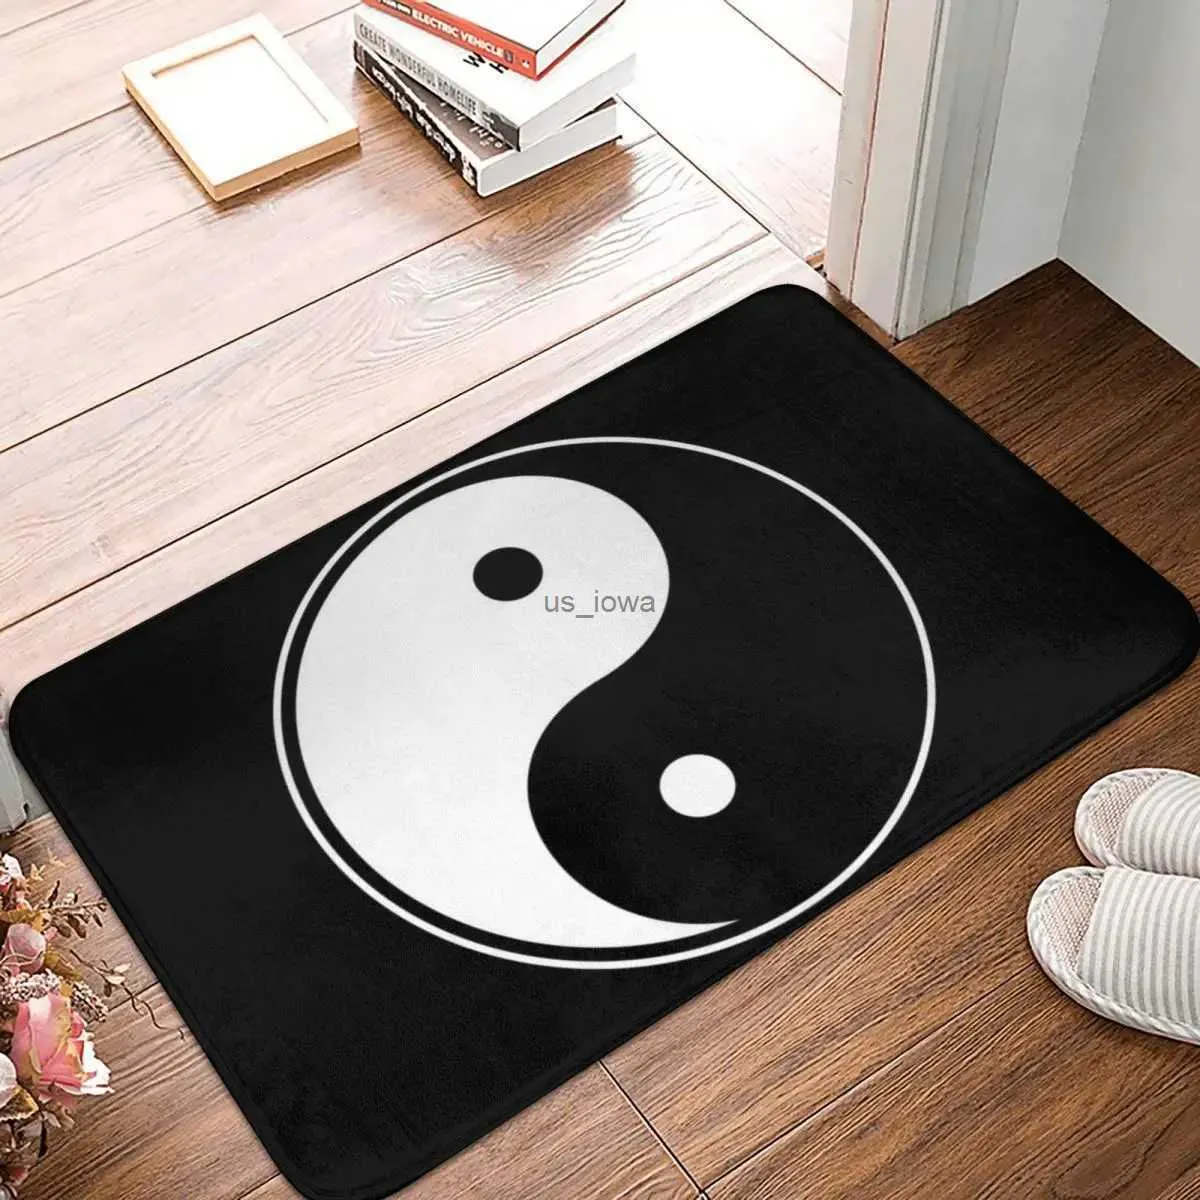 Mattor tai chi yin yang tryckt dörrmatta matta